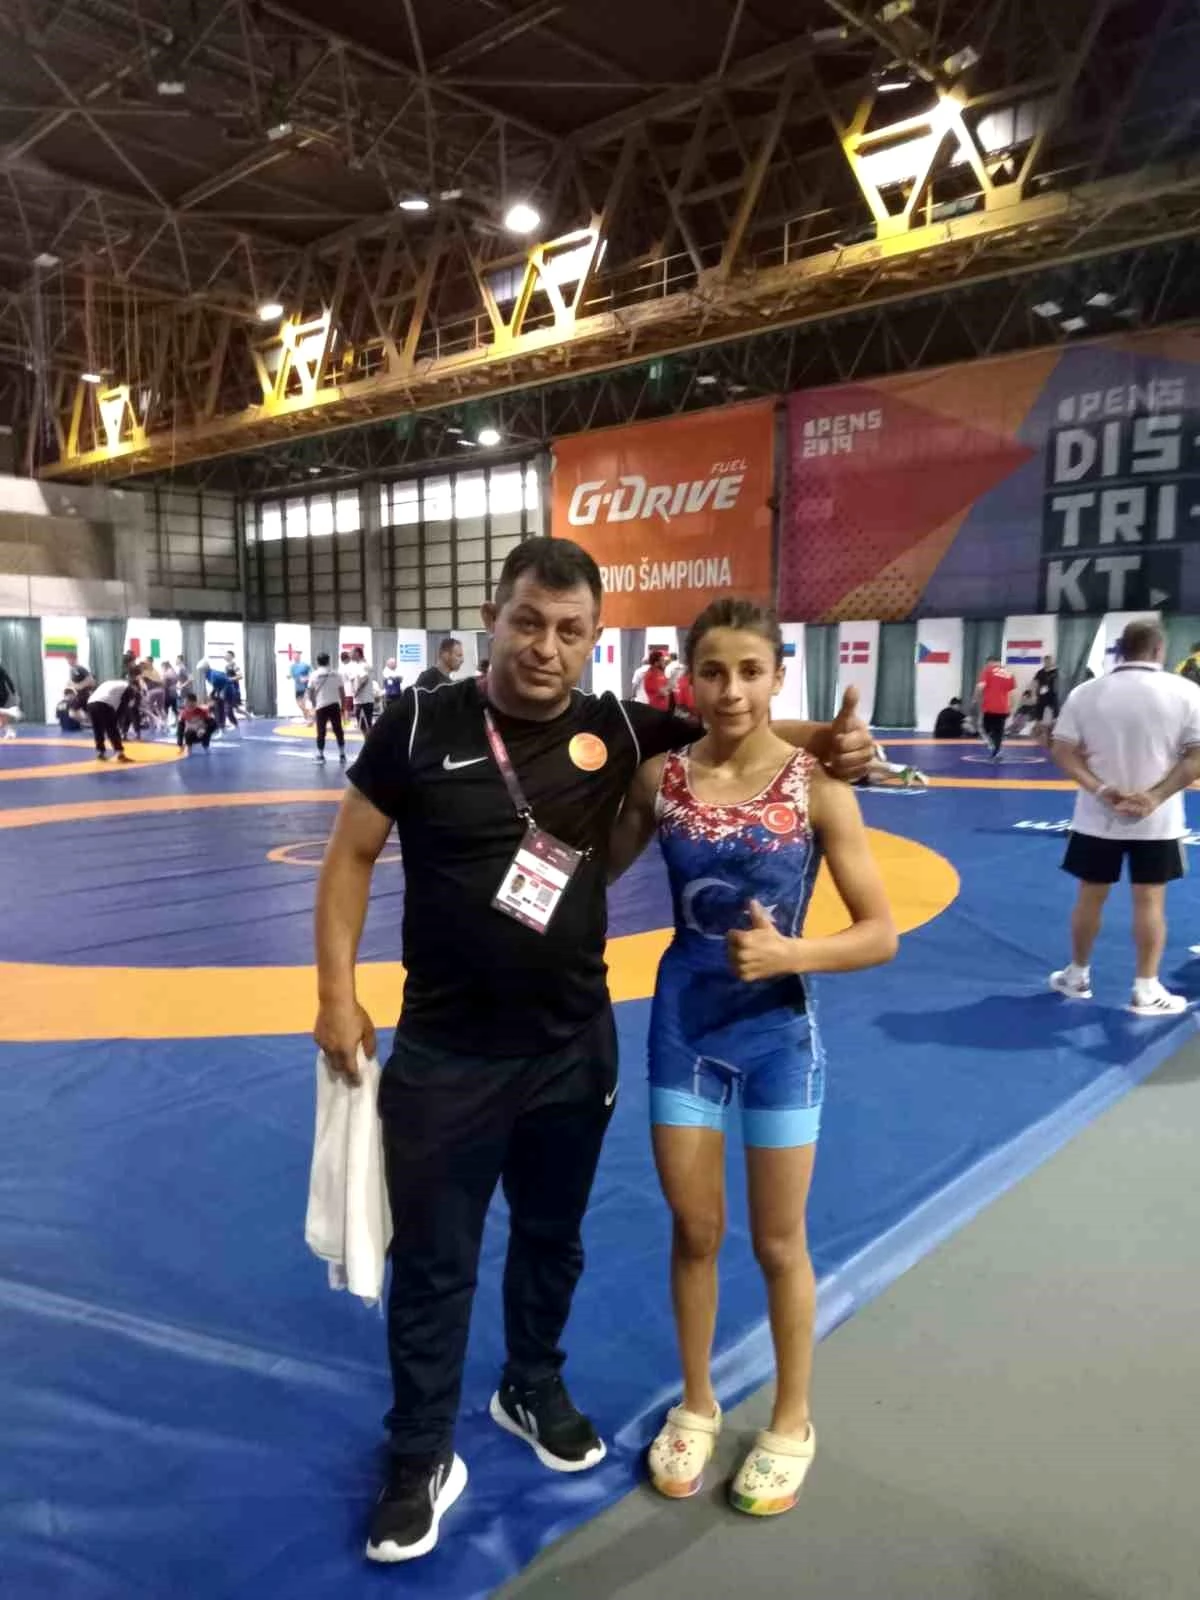 Afyonkarahisar Taşoluk Spor Kulübü Sporcusu Fatma Yılmaz Avrupa Güreş Şampiyonasında Finale Kalan İlk Türk Kadın Güreşçi Oldu